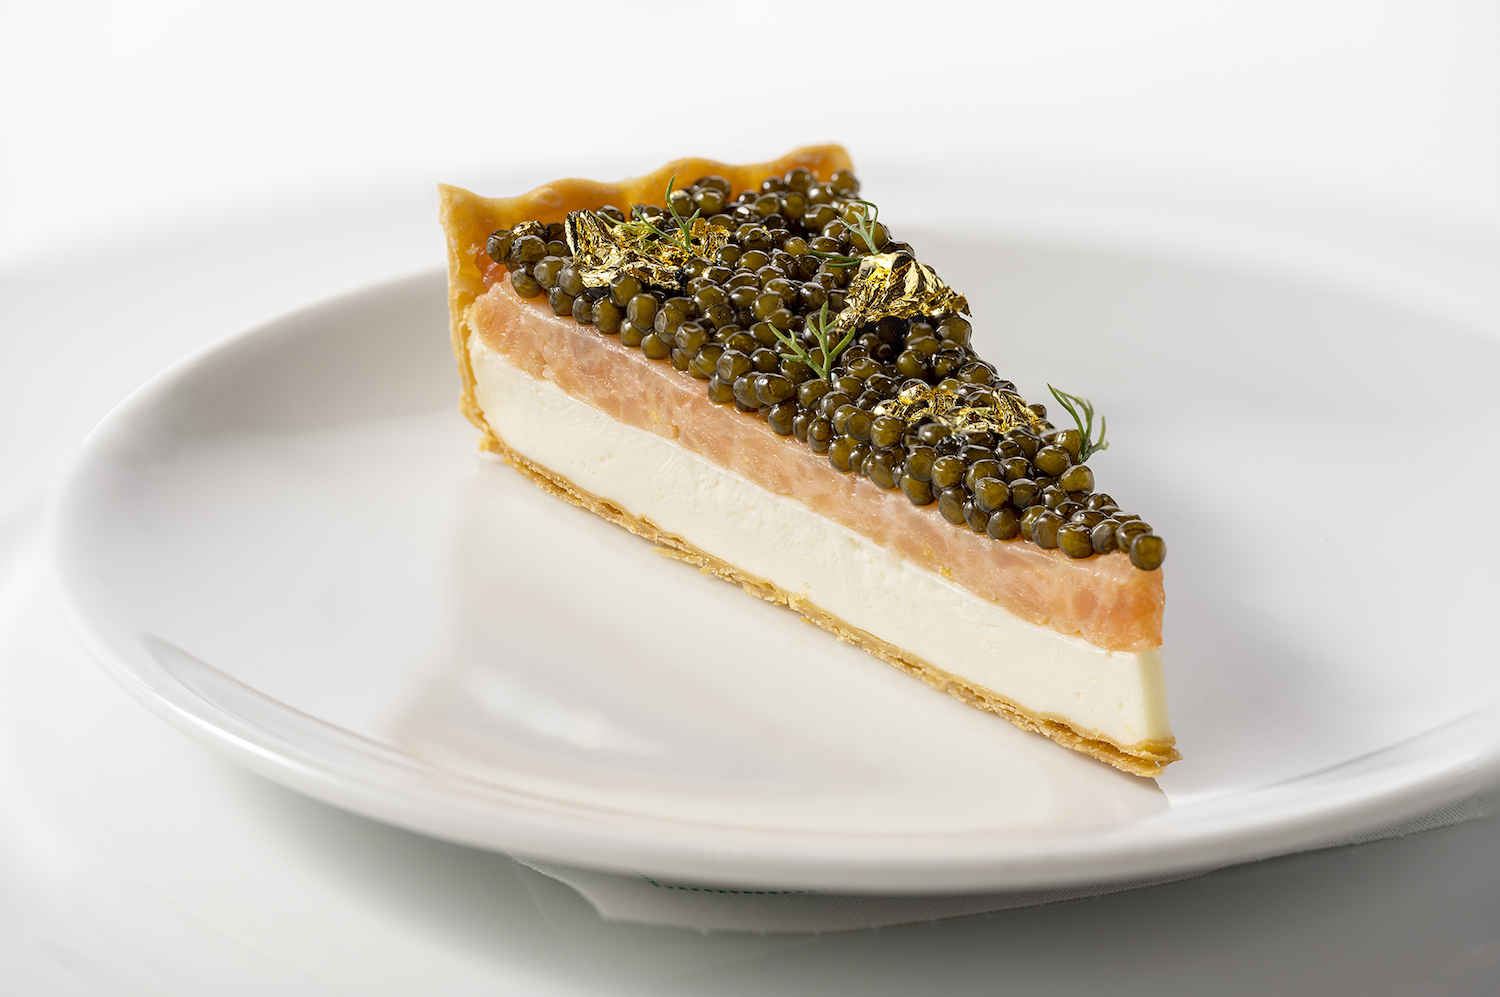 Smoked salmon cheesecake with caviar